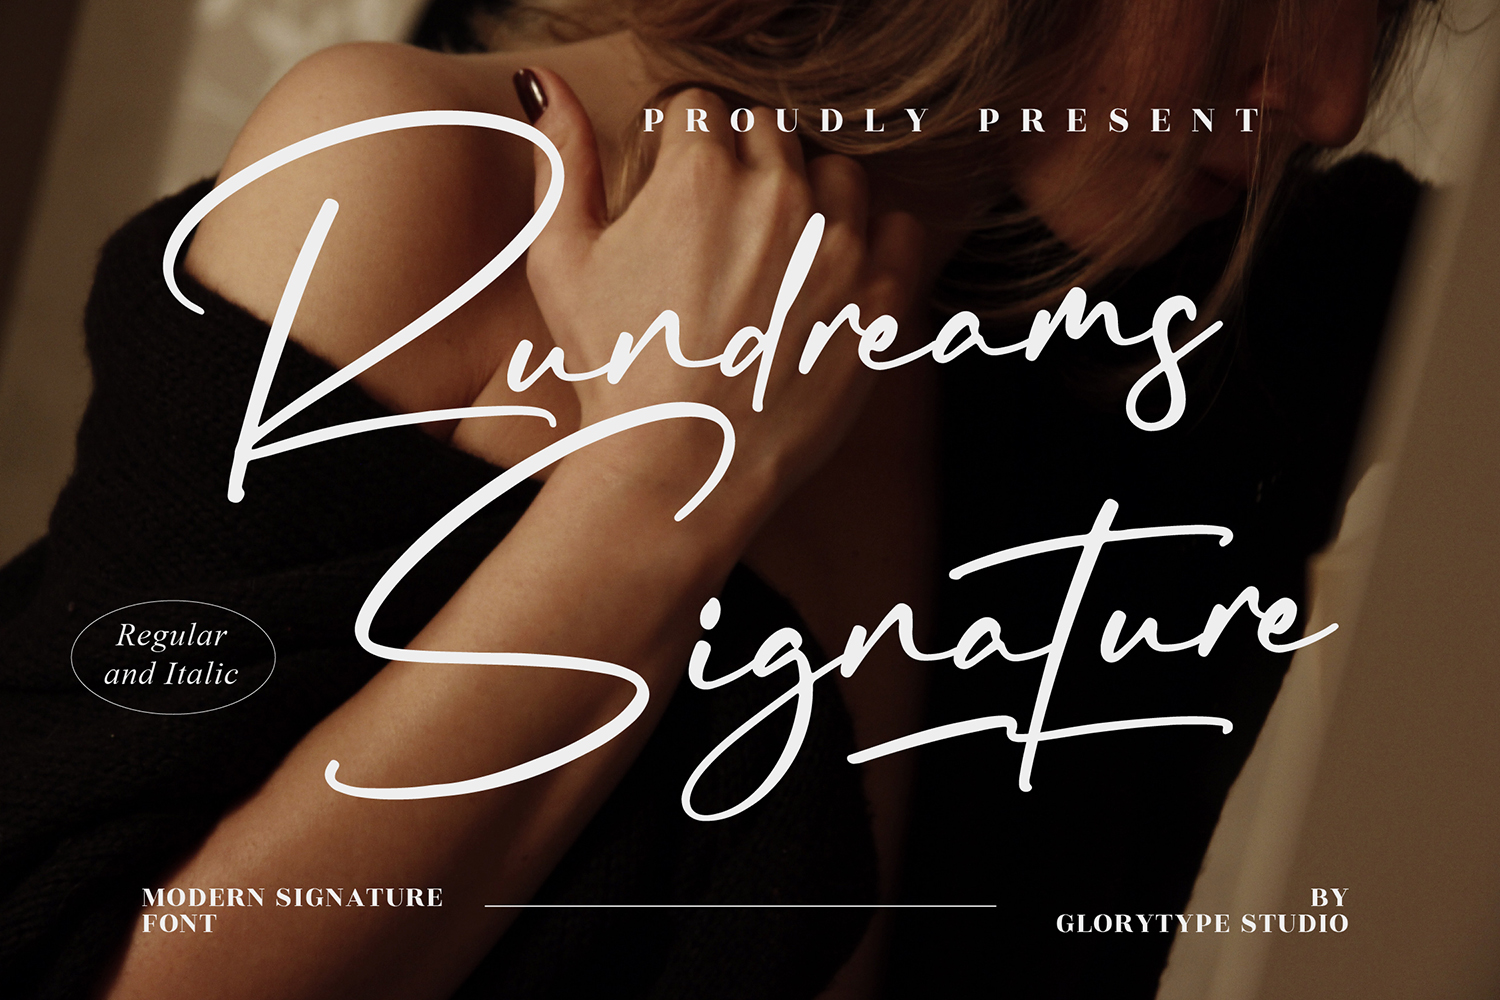 Rundreams Signature Free Font